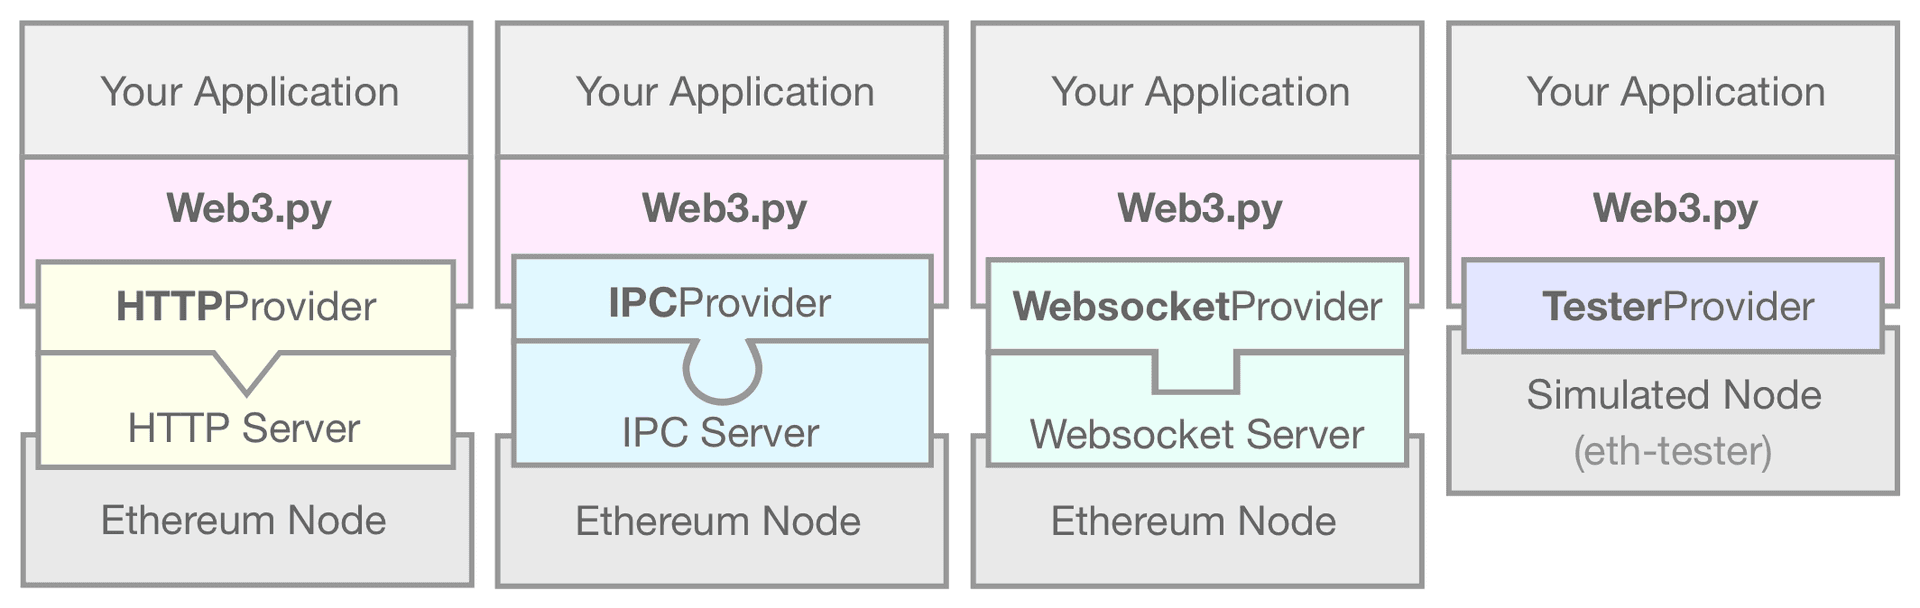 Ein Diagramm, das den EthereumTesterProvider zeigt, der Ihre web3.py-Anwendung mit einem simulierten Ethereum-Node verbindet